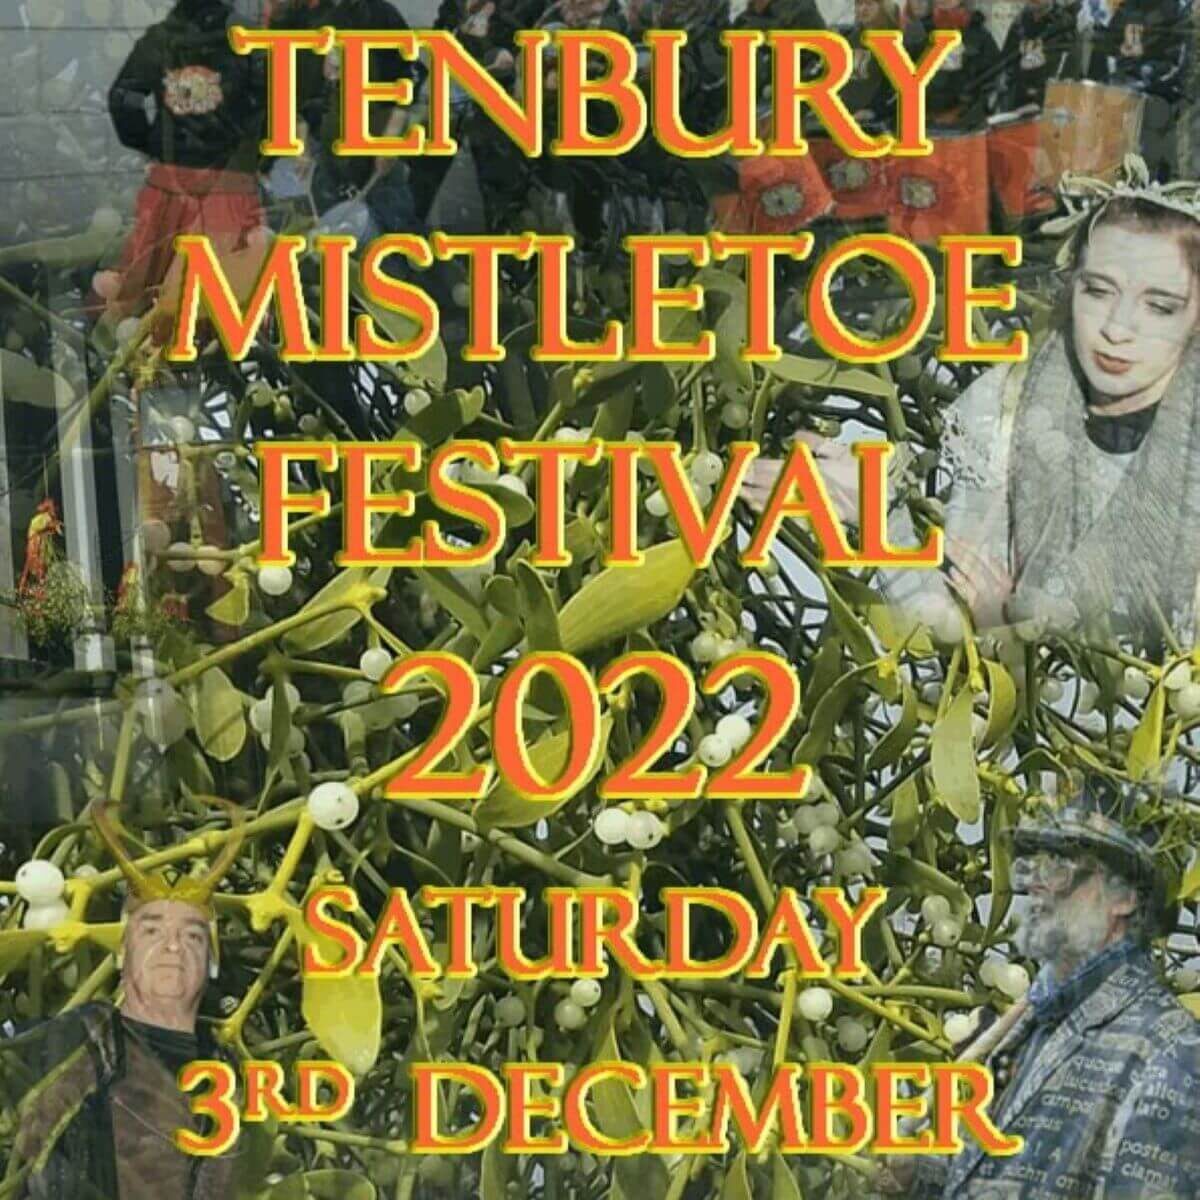 Mistletoe Fest